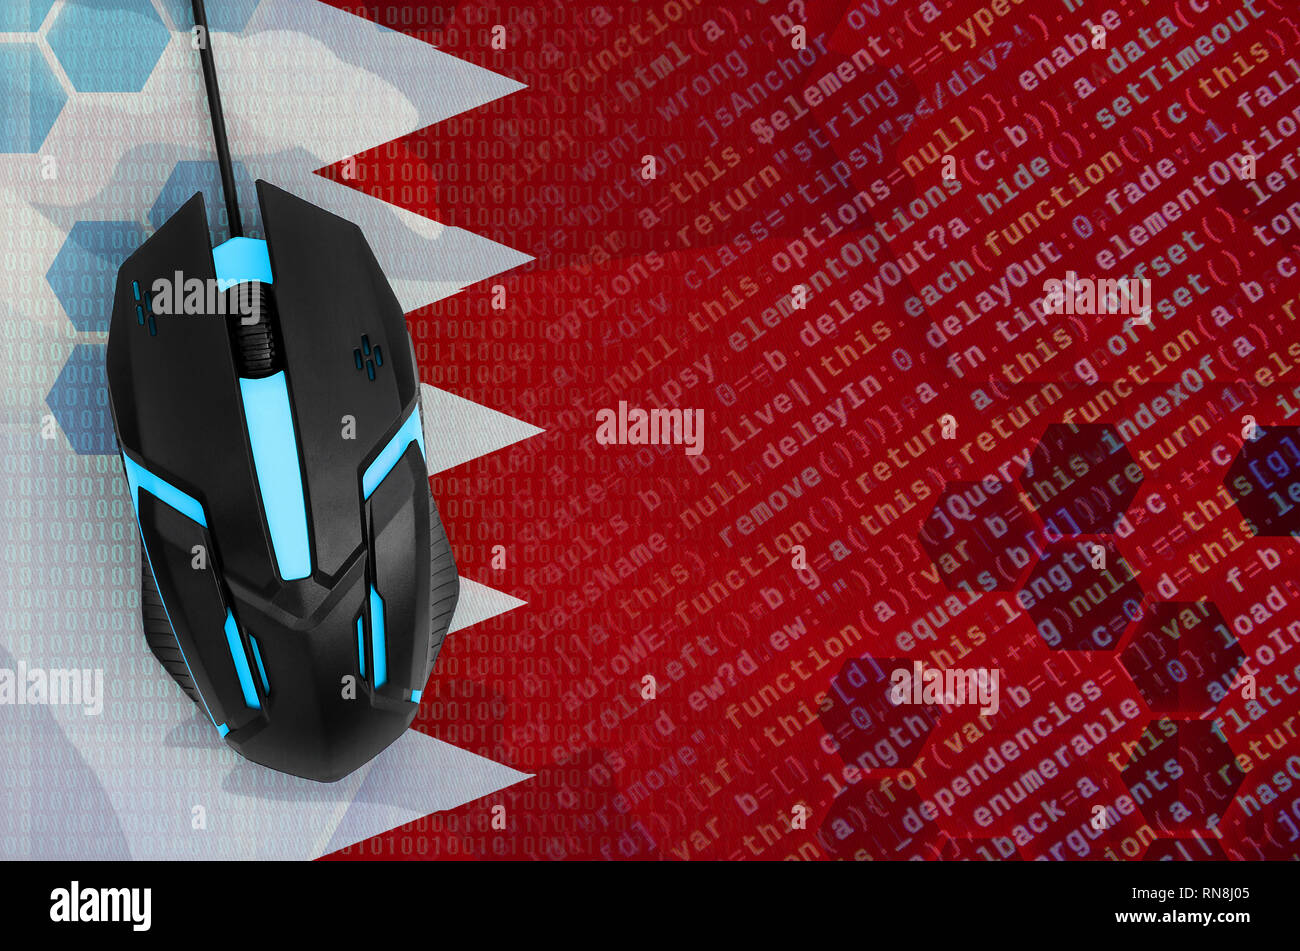 Drapeau de Bahreïn et rétro moderne souris d'ordinateur. Le concept de menace numérique, des actions illégales sur Internet Banque D'Images